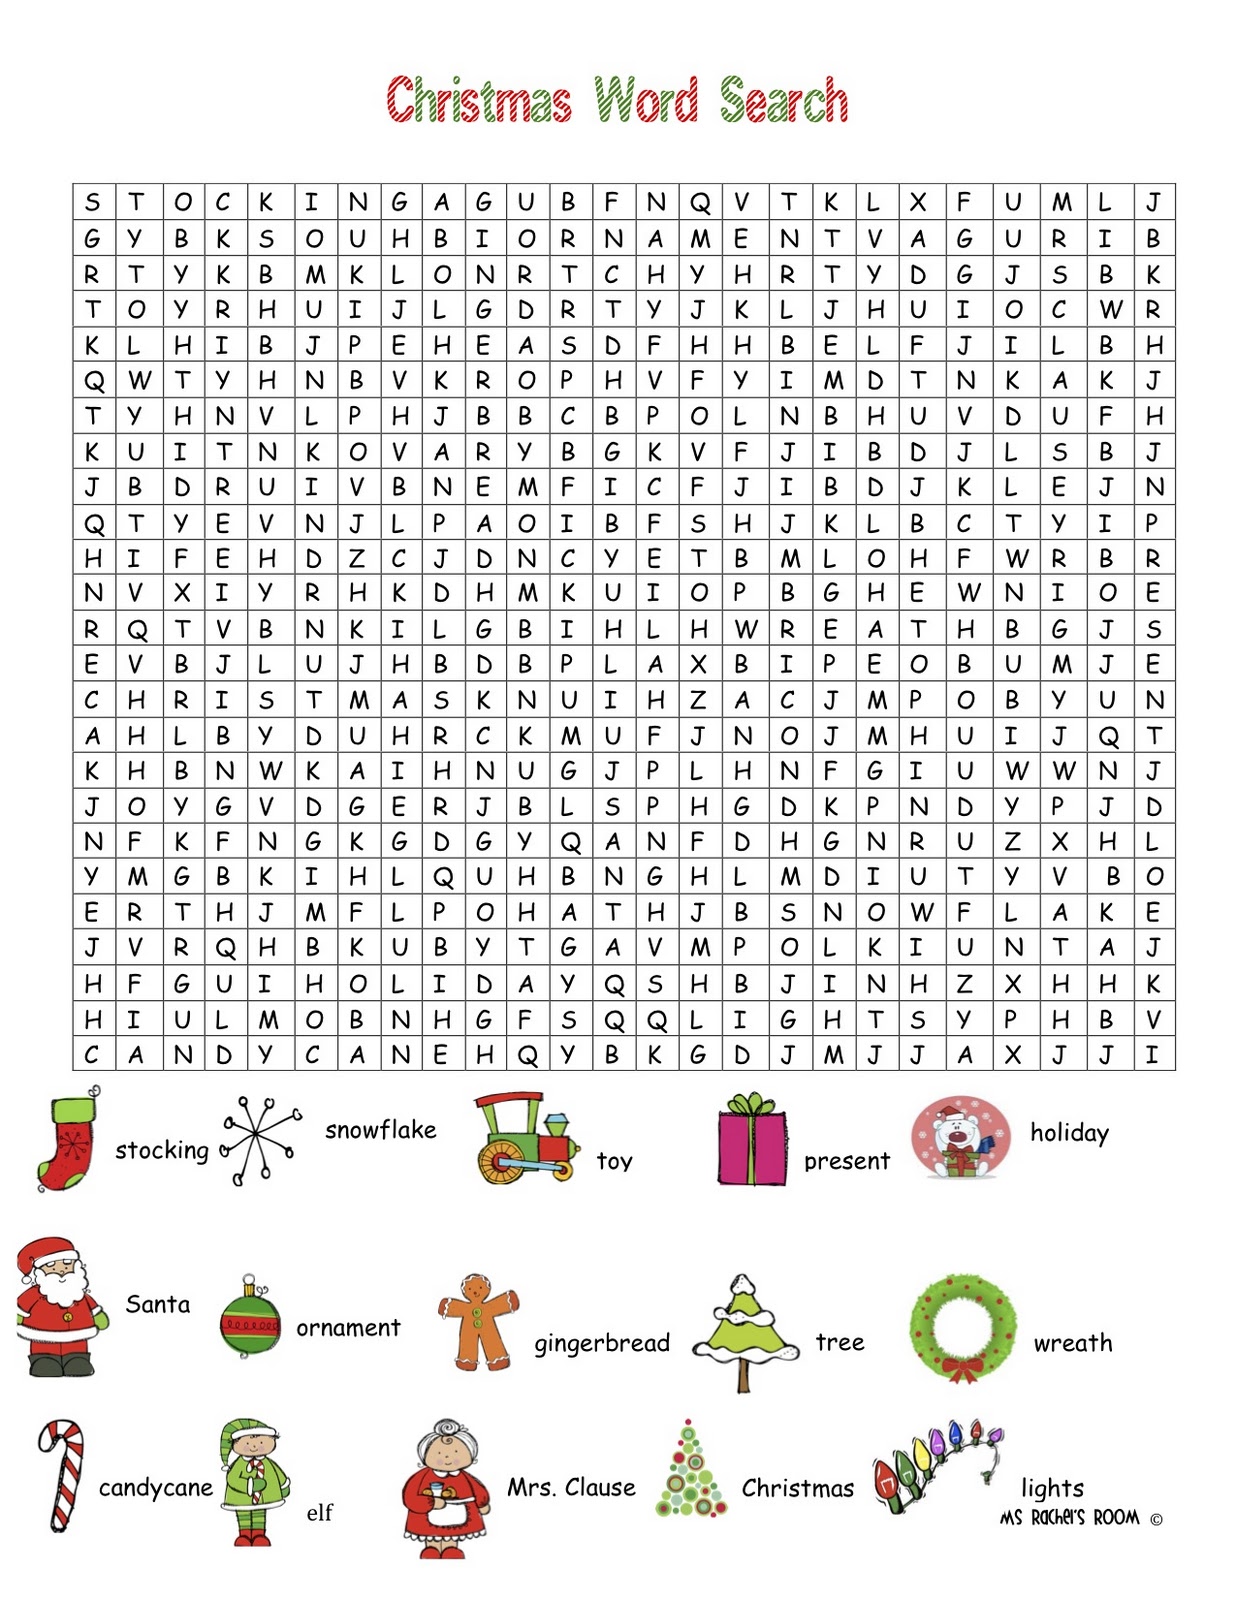 Christmas Word Search Printable Pdf